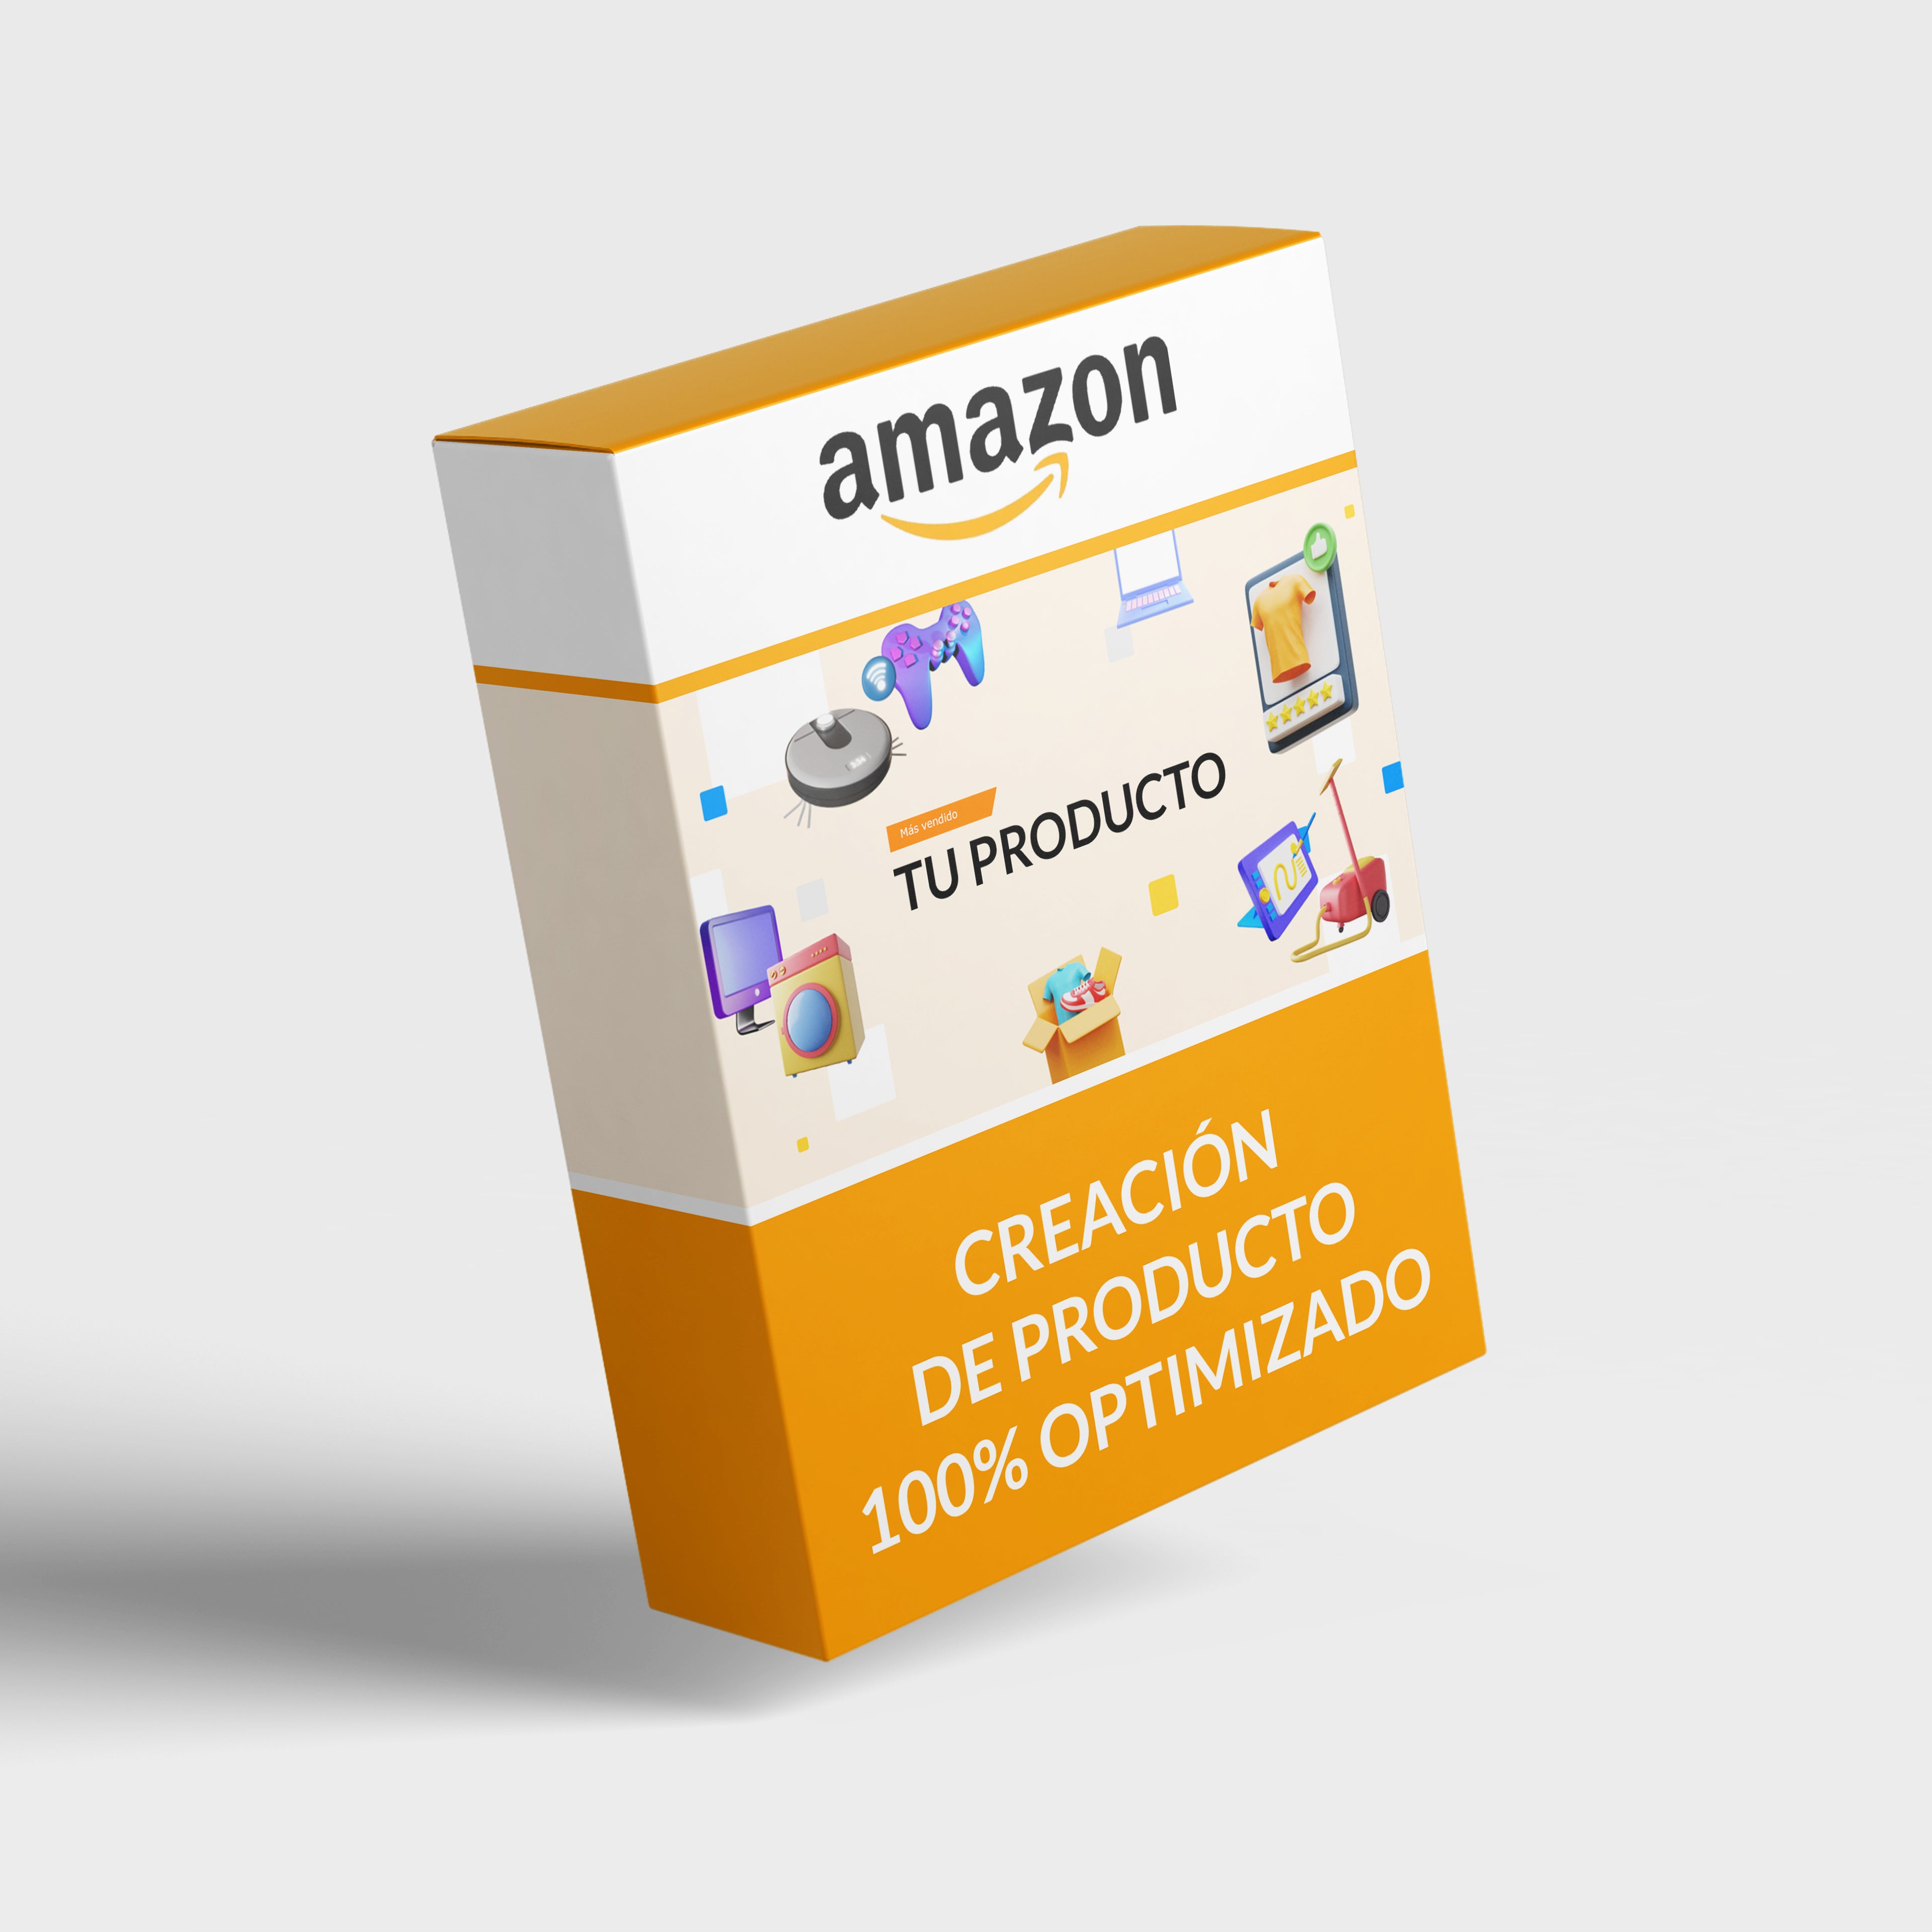 Creación producto 100% optimizado Amazon